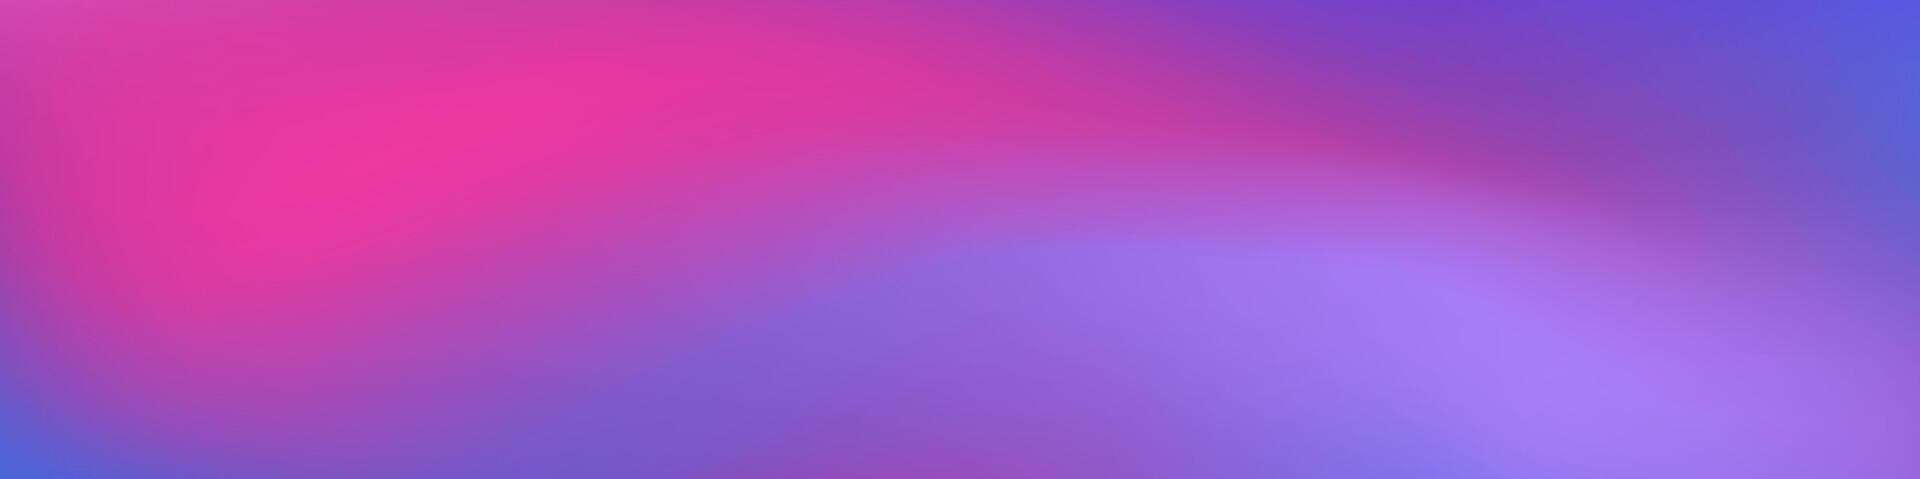 resumen antecedentes púrpura azul color con borroso imagen es un visualmente atractivo diseño activo para utilizar en anuncios, sitios web, o social medios de comunicación publicaciones a añadir un moderno toque a el efectos visuales vector